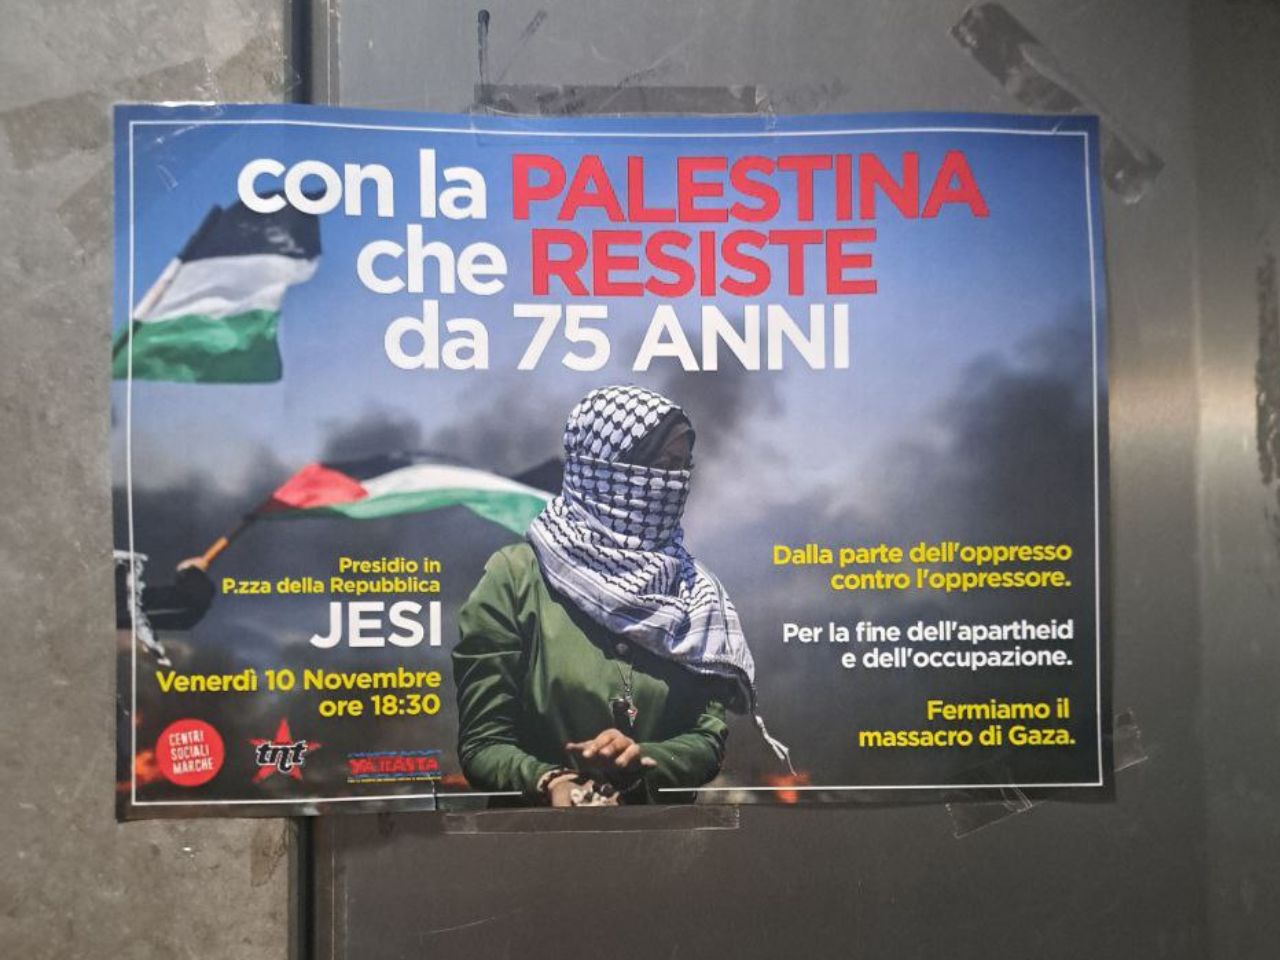 Jesi “con la Palestina”: venerdì in Piazza la manifestazione contro il massacro di Gaza